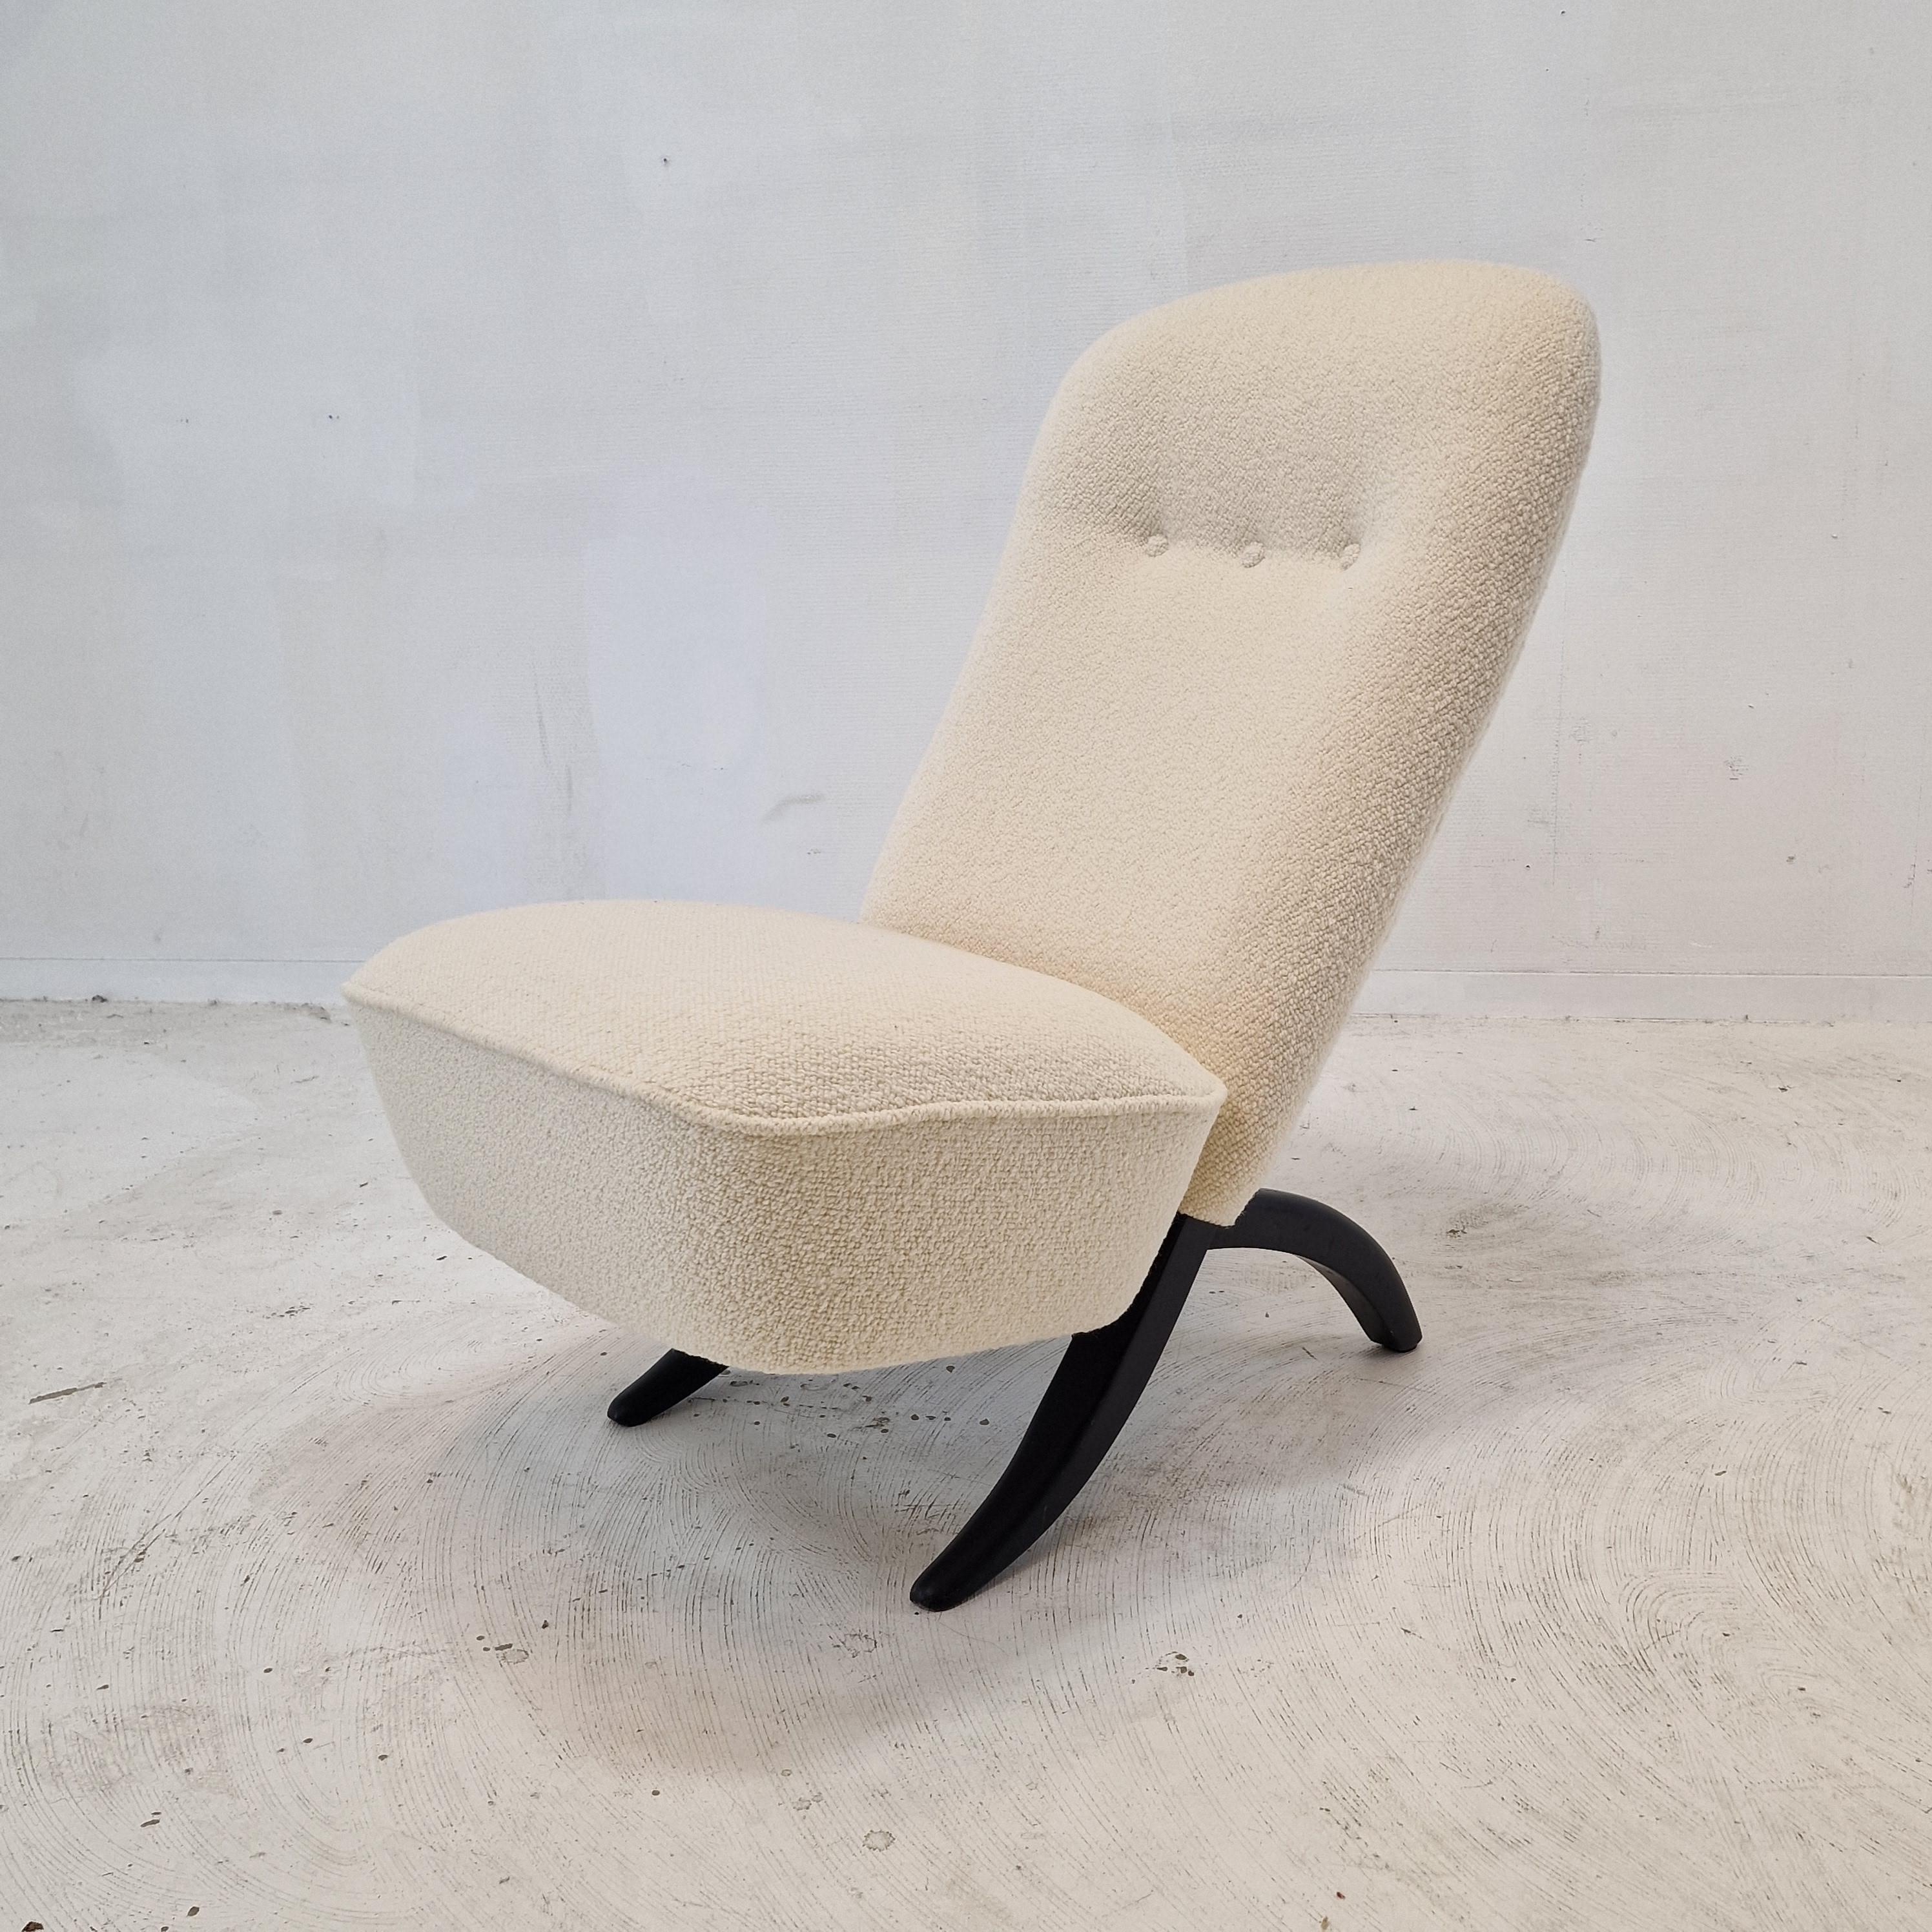 Atemberaubender Mid-Century Modern Congo Chair, entworfen von Theo Ruth für Artifort.
Ikonisches niederländisches Design aus den 50er Jahren.

Die Rückenlehne und die Sitzfläche sind 2 separate Teile, die sich leicht zusammenfügen lassen und den